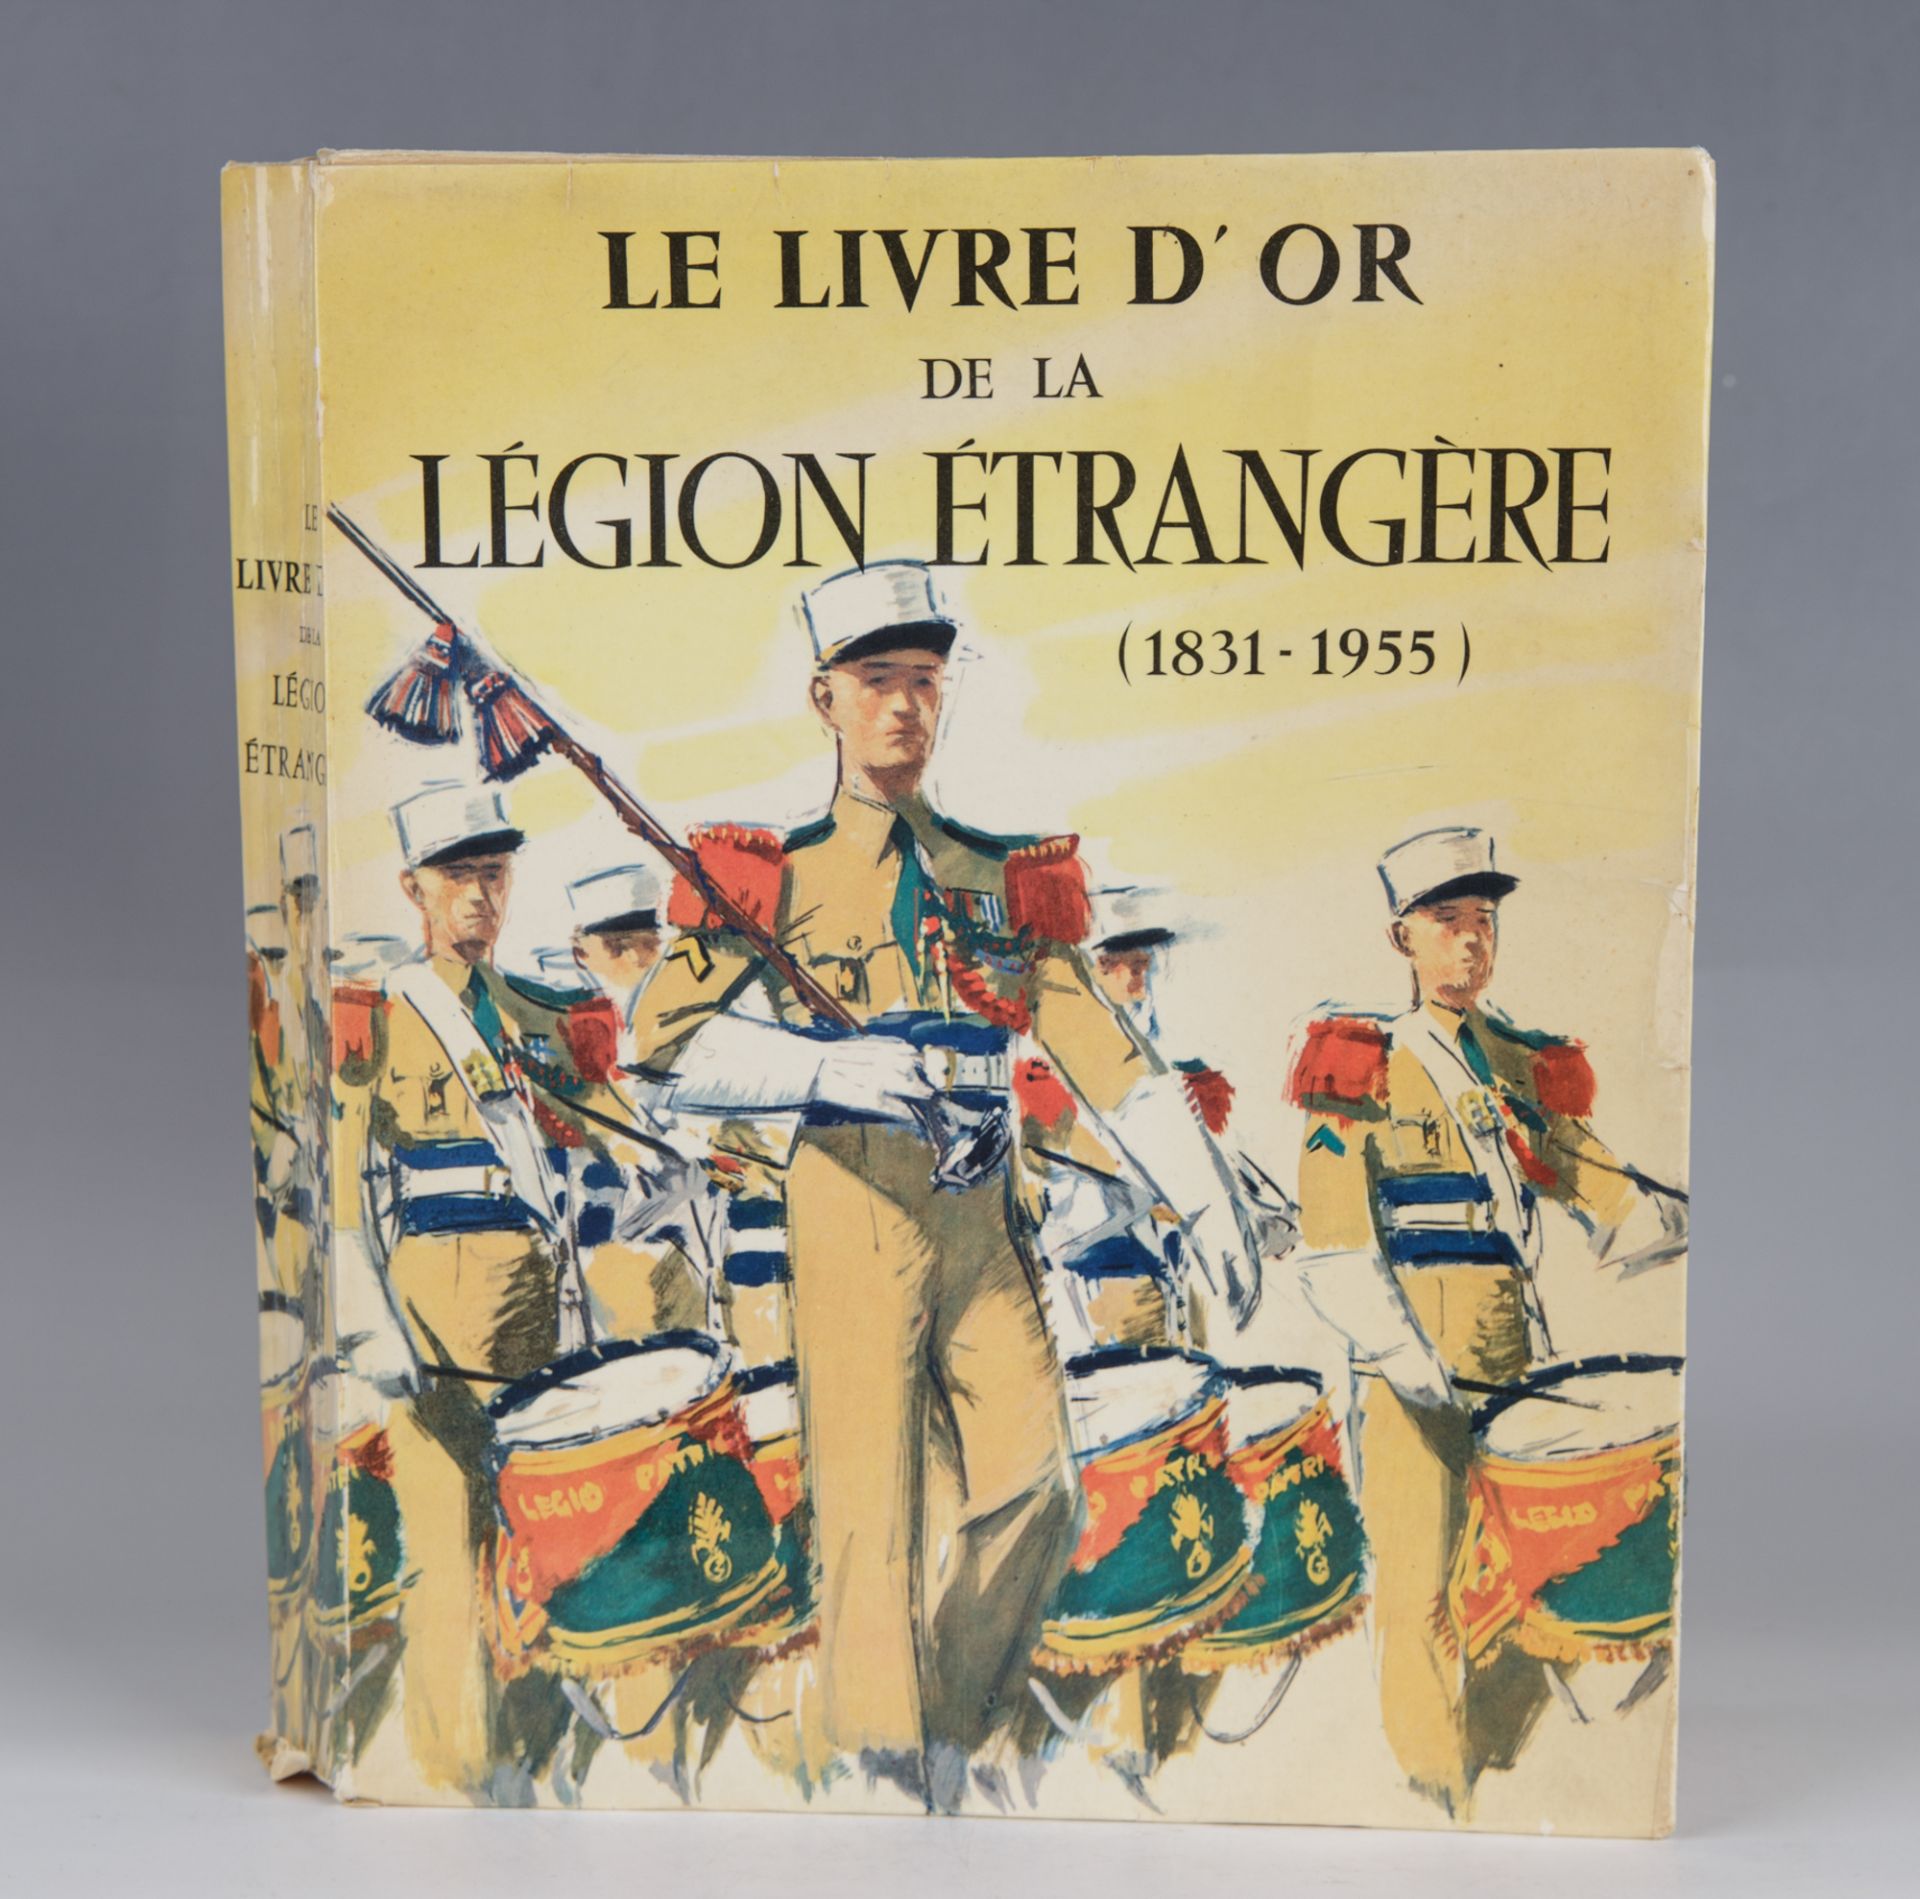 Le Livre D'Or de la Légion Étrangère 1831-1955 (Das goldene Buch der Fremdenlegion)